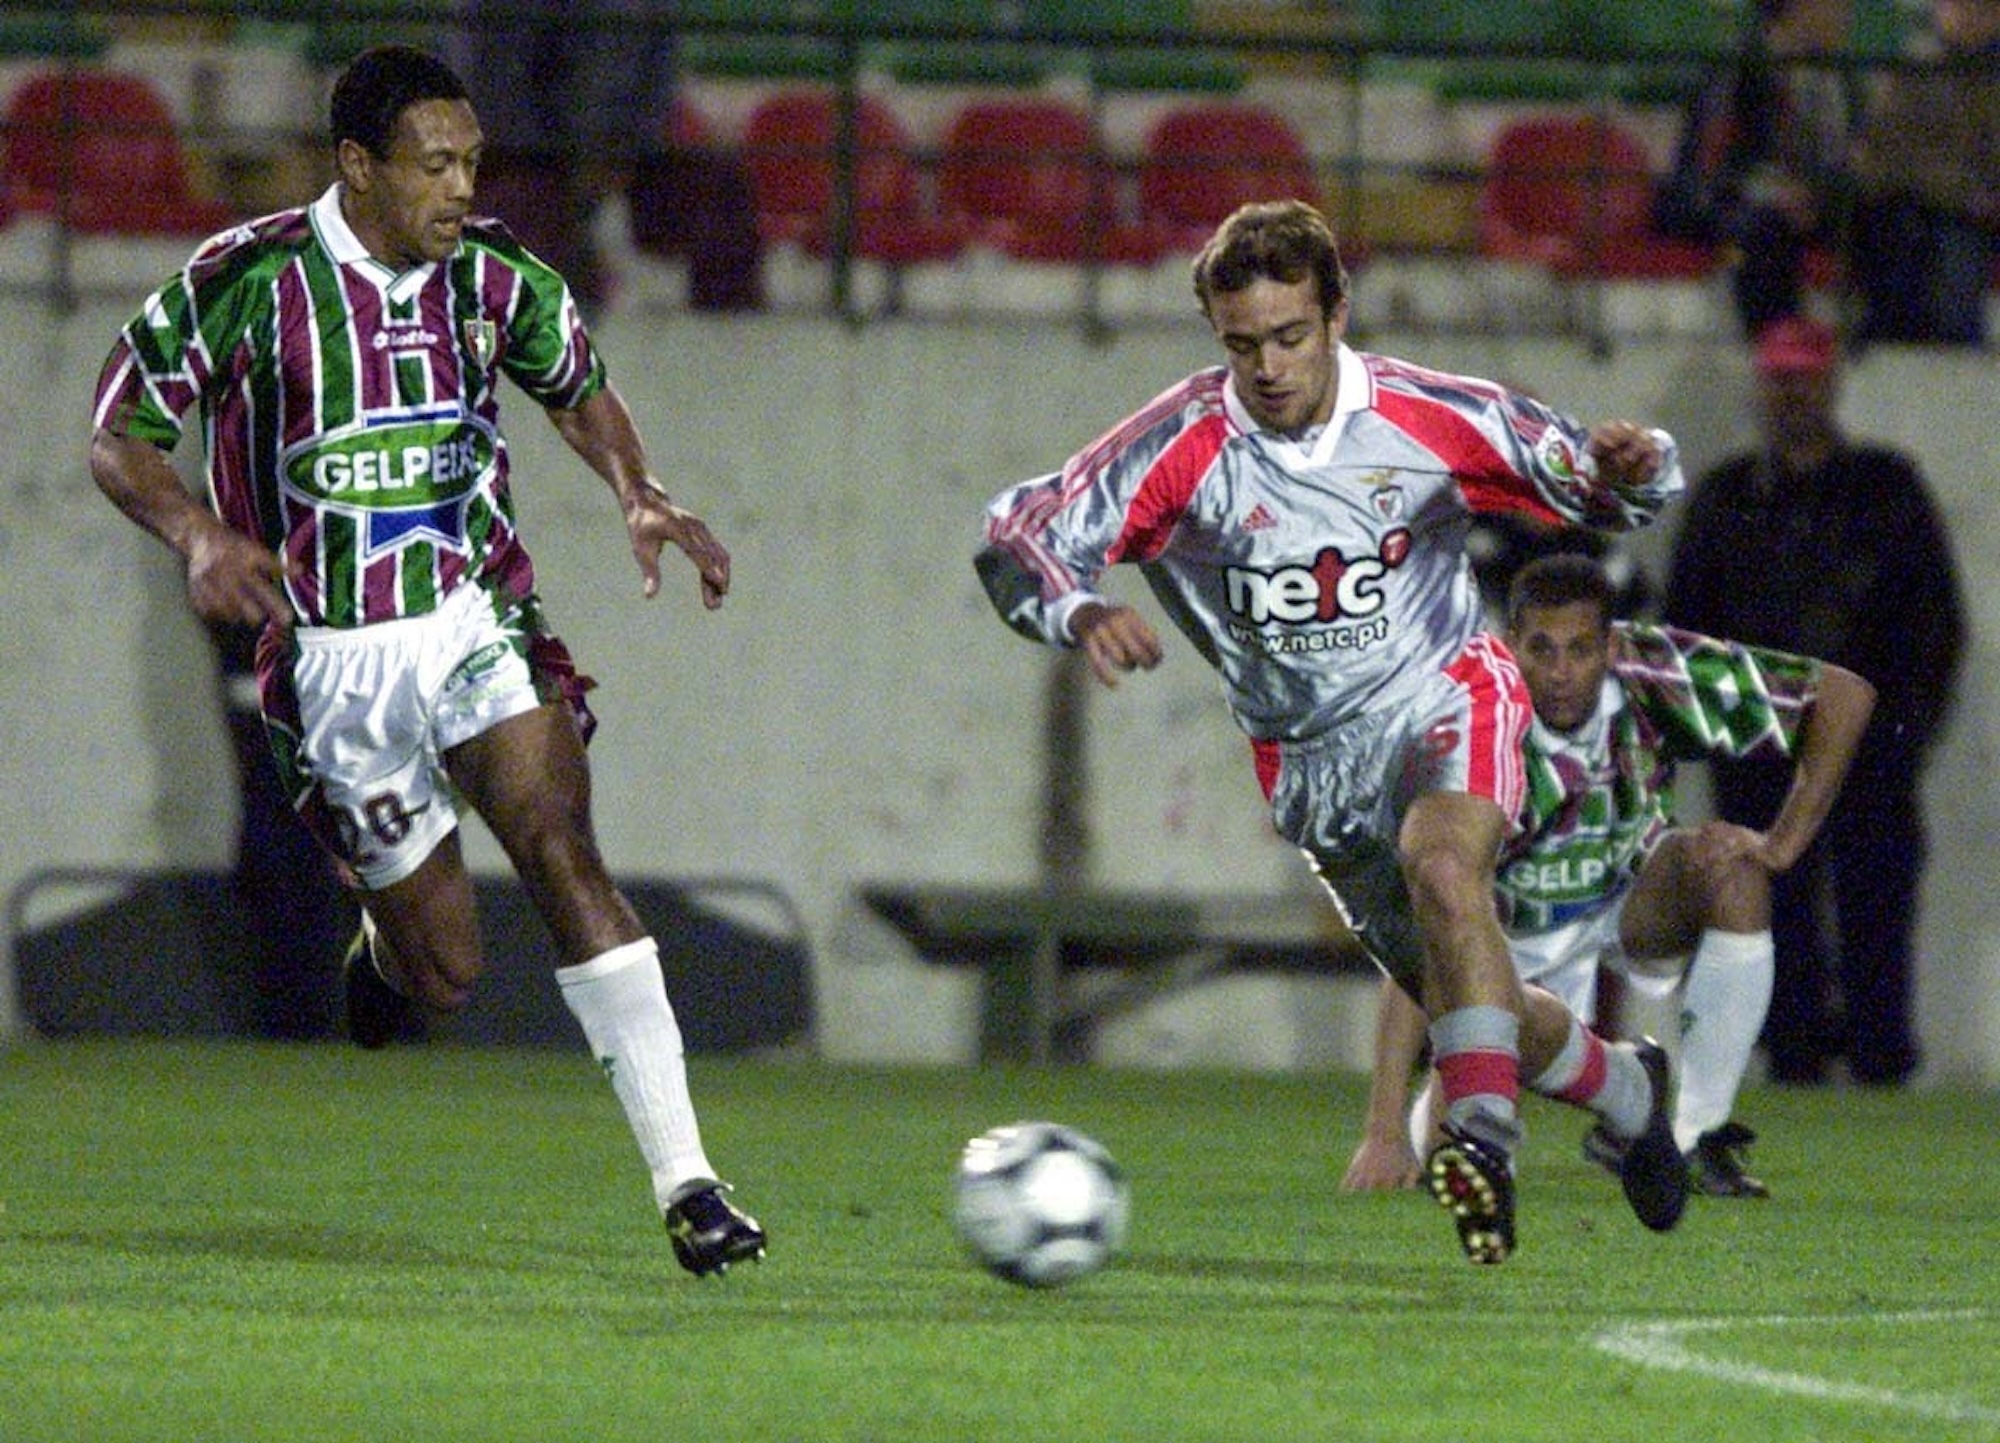 Lázaro Oliveira featured in a game when Estrela da Amadora faced Benfica in 2001